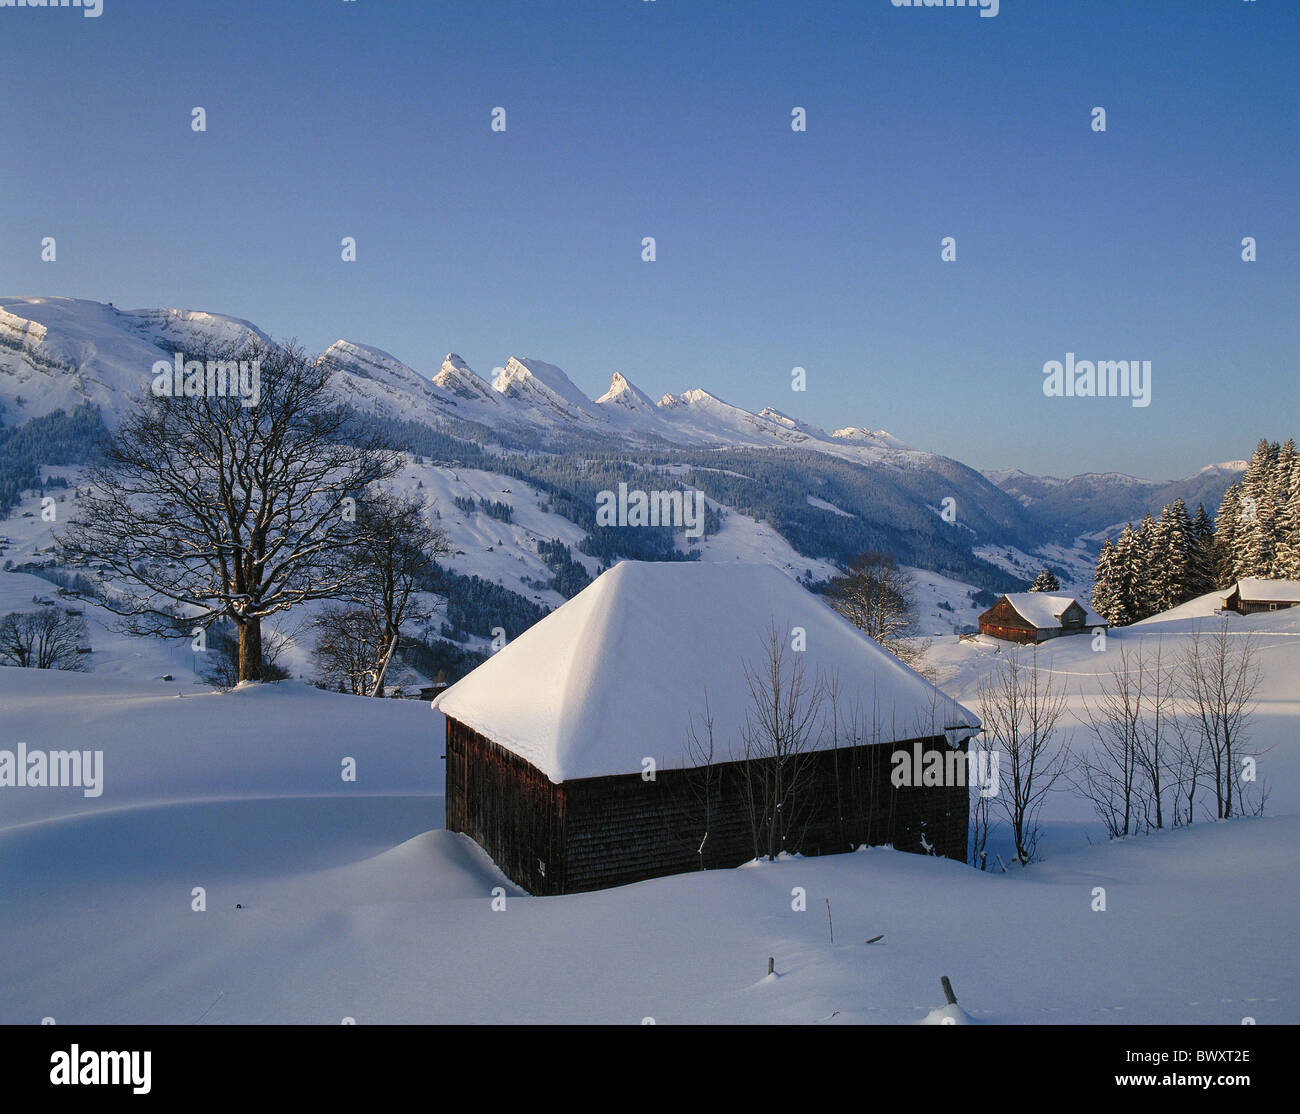 Churfirsten Svizzera Europa San Gallo Toggenburg coperto di neve e neve Timber house paesaggio invernale Foto Stock